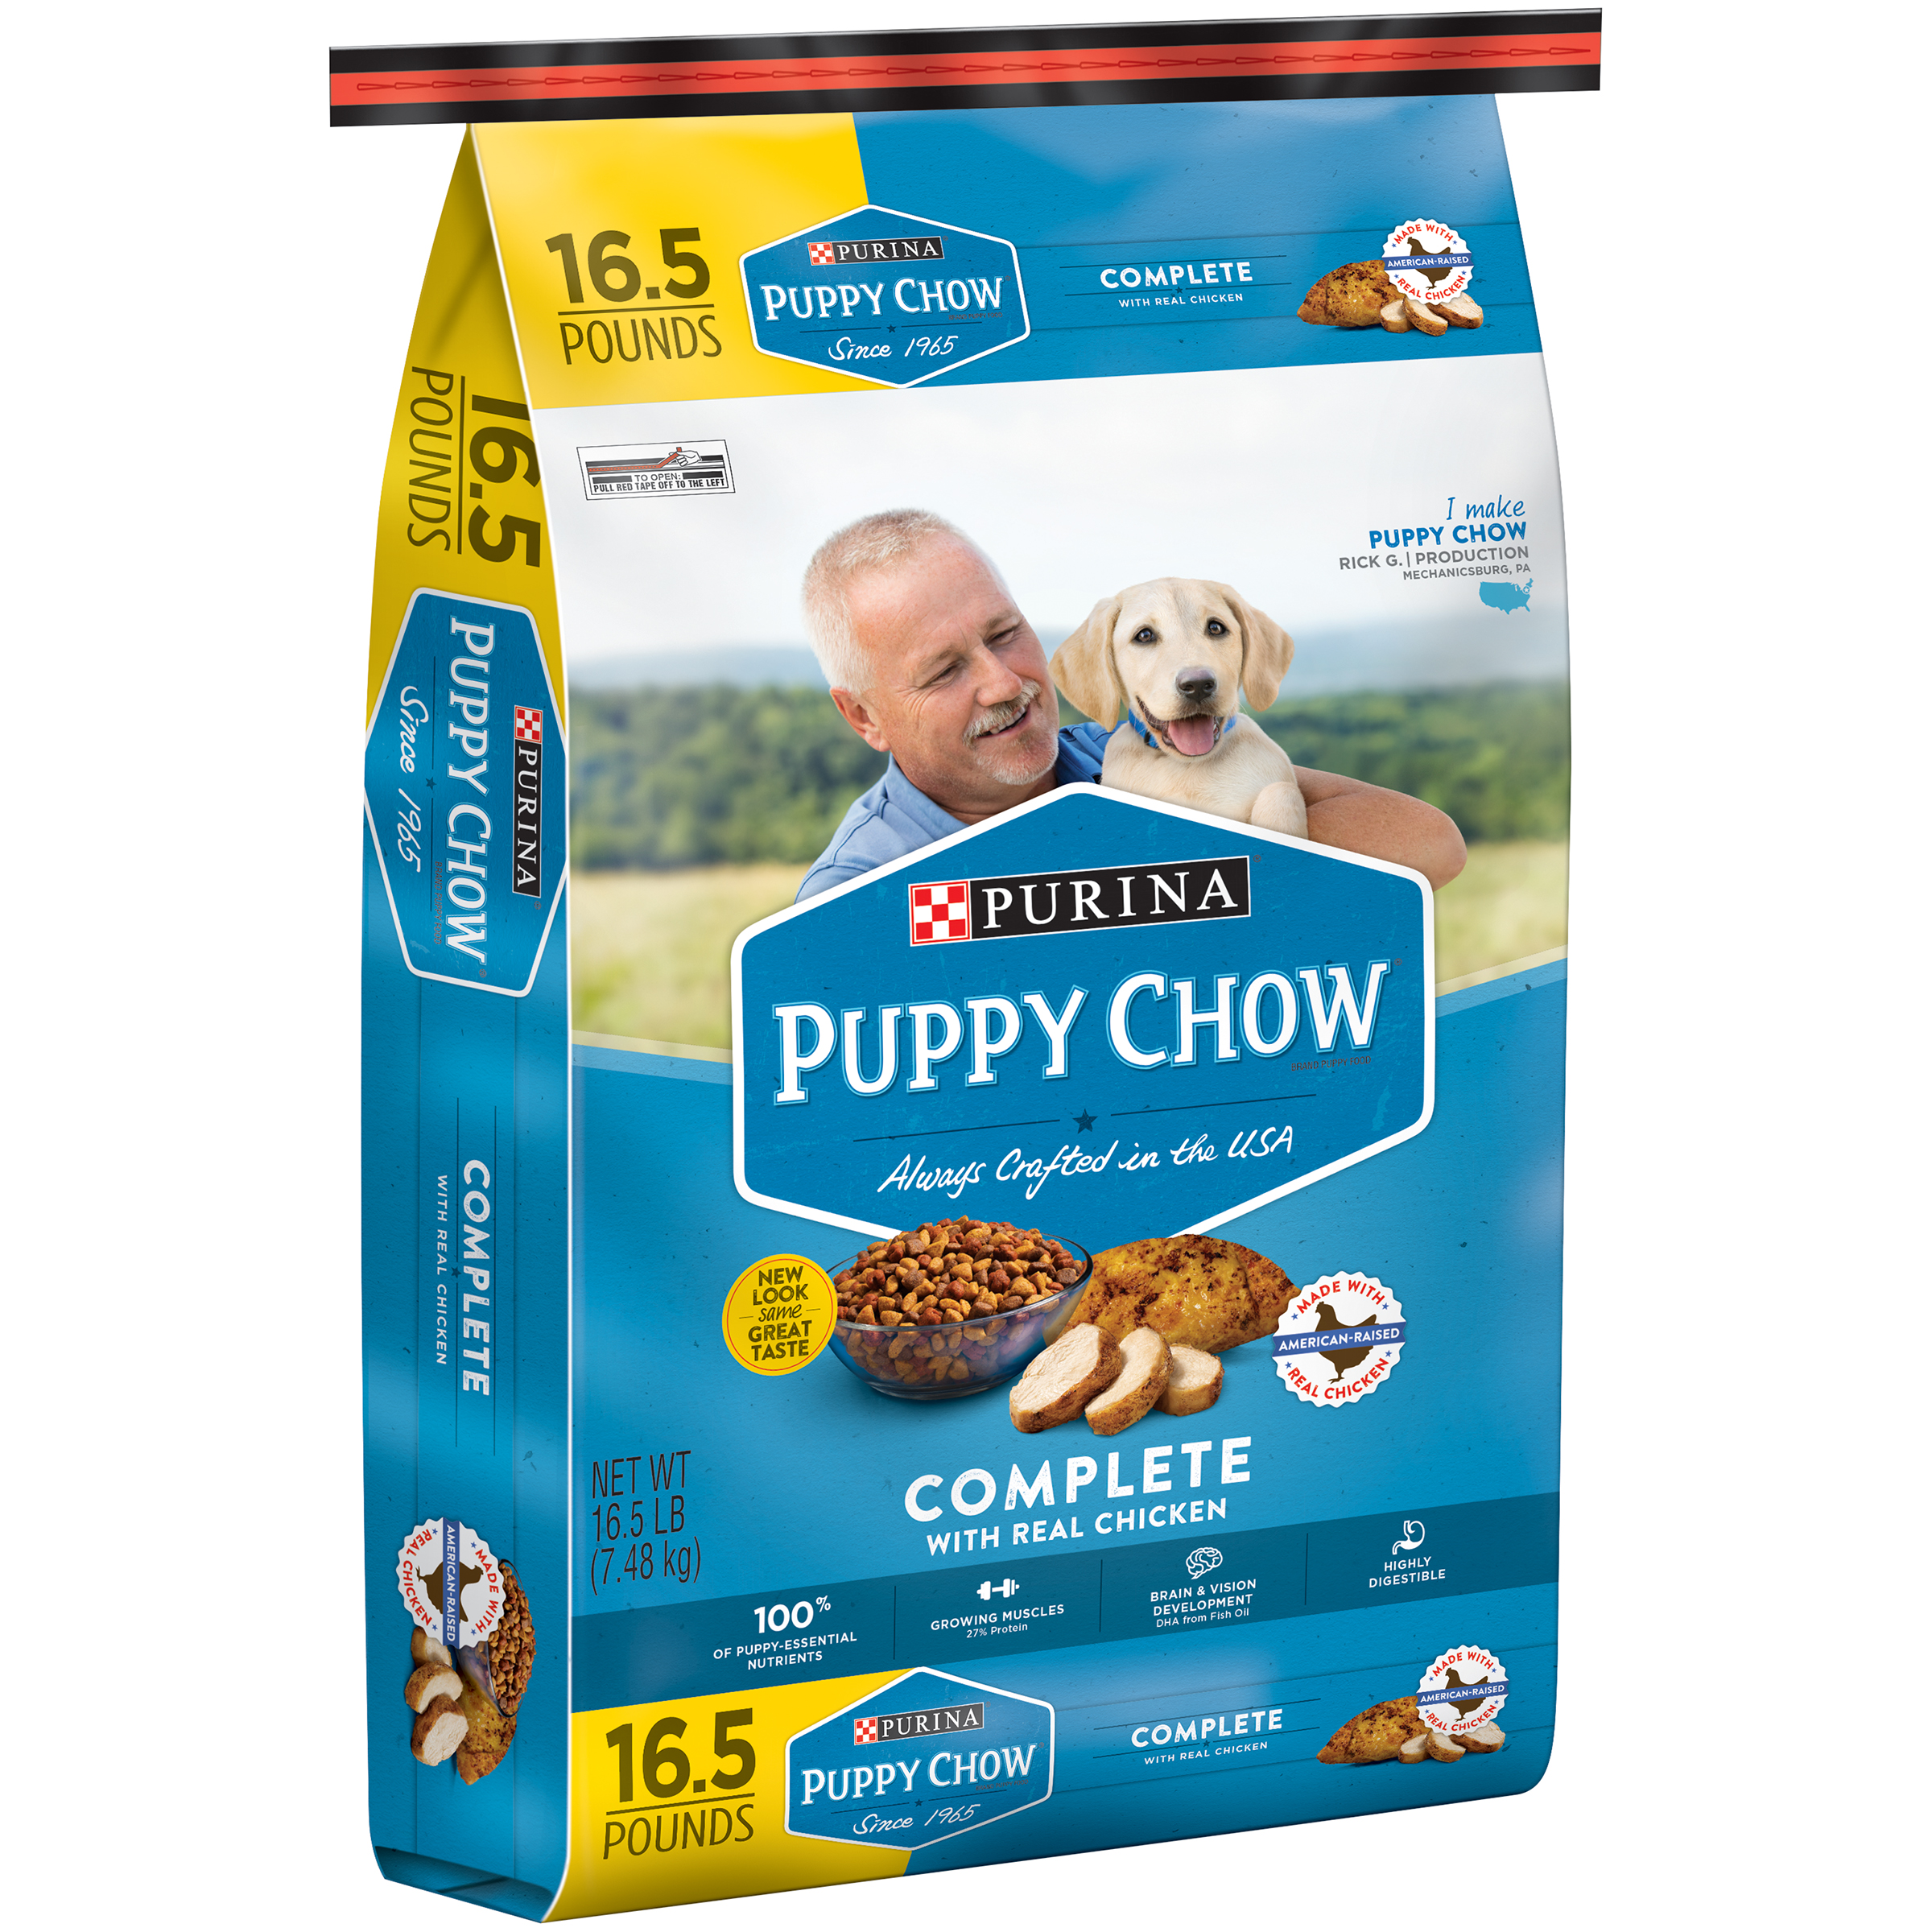 Purina Puppy Chow Complete Puppy Food 16.5 lb. Bag La Comprita